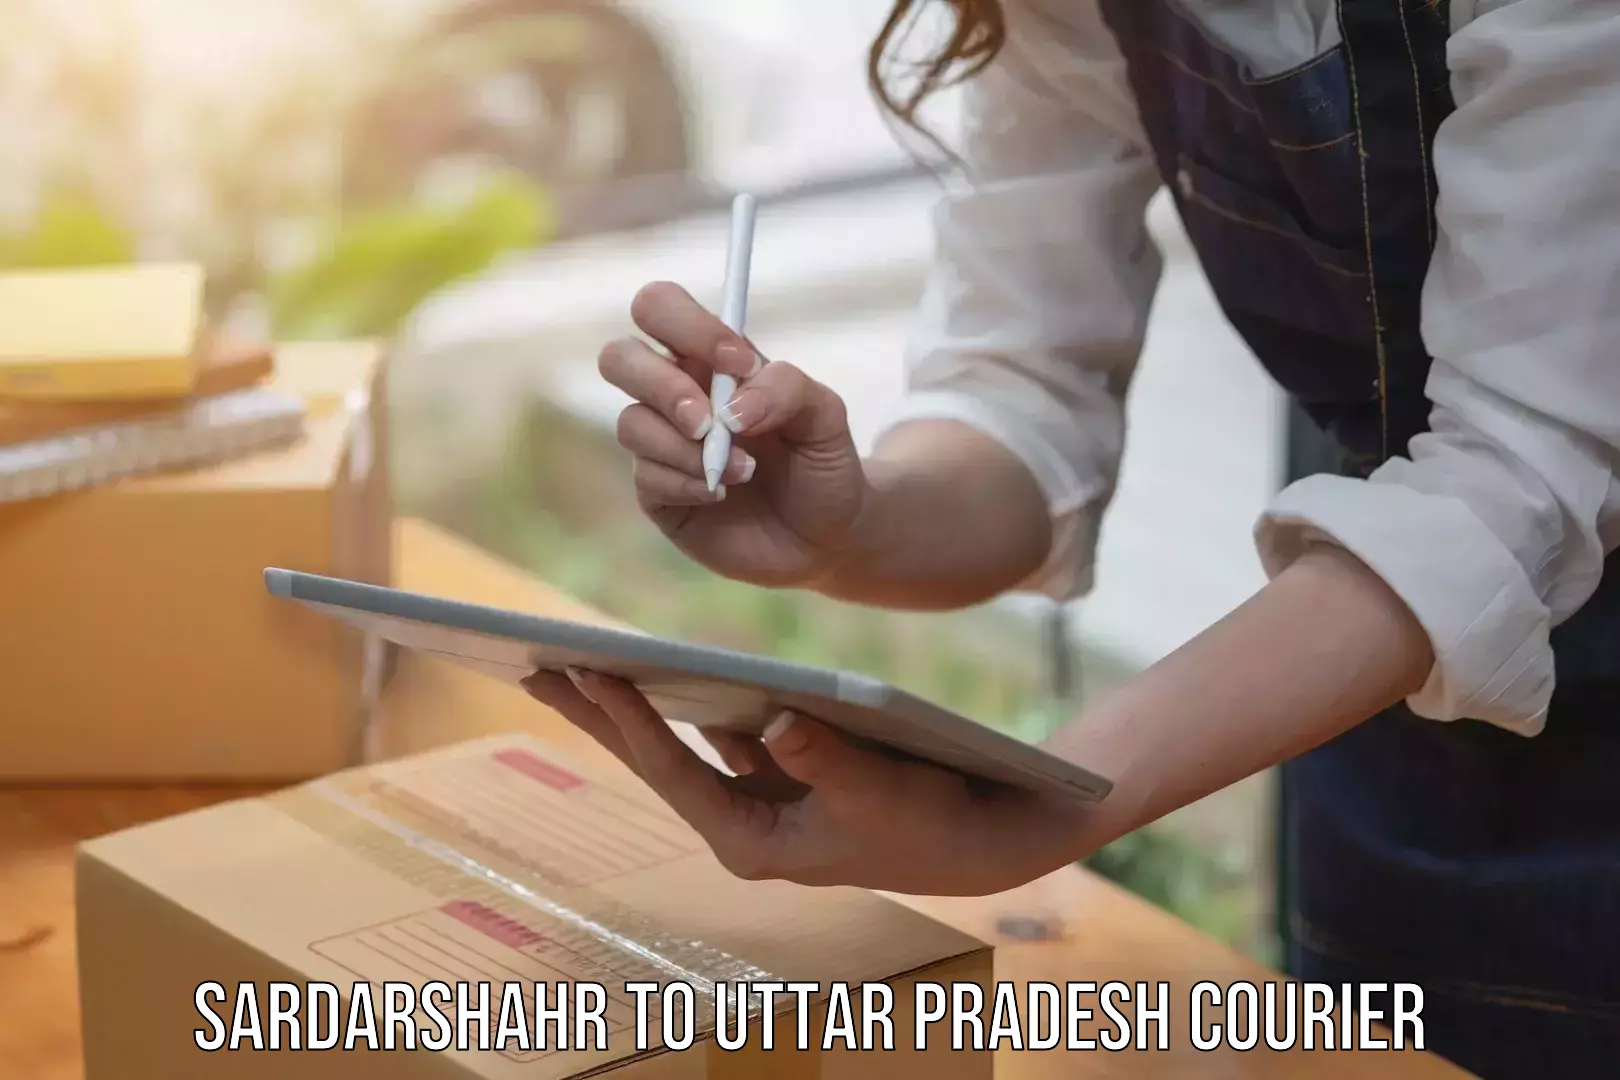 Urgent courier needs Sardarshahr to Uttar Pradesh